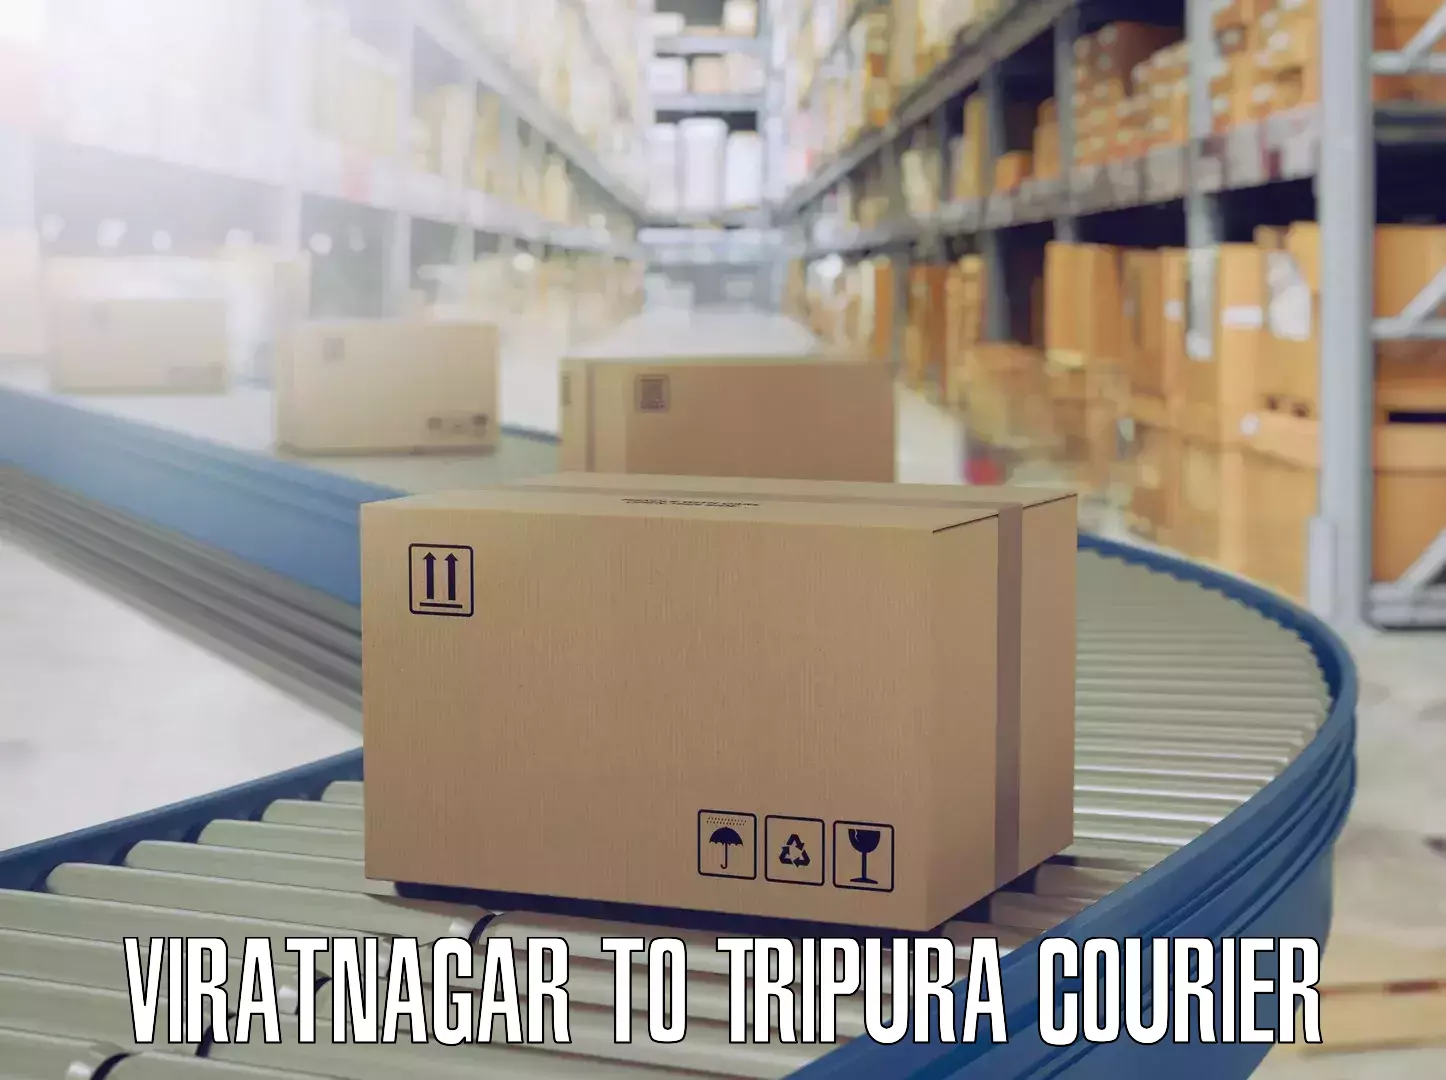 Furniture moving plans Viratnagar to Khowai